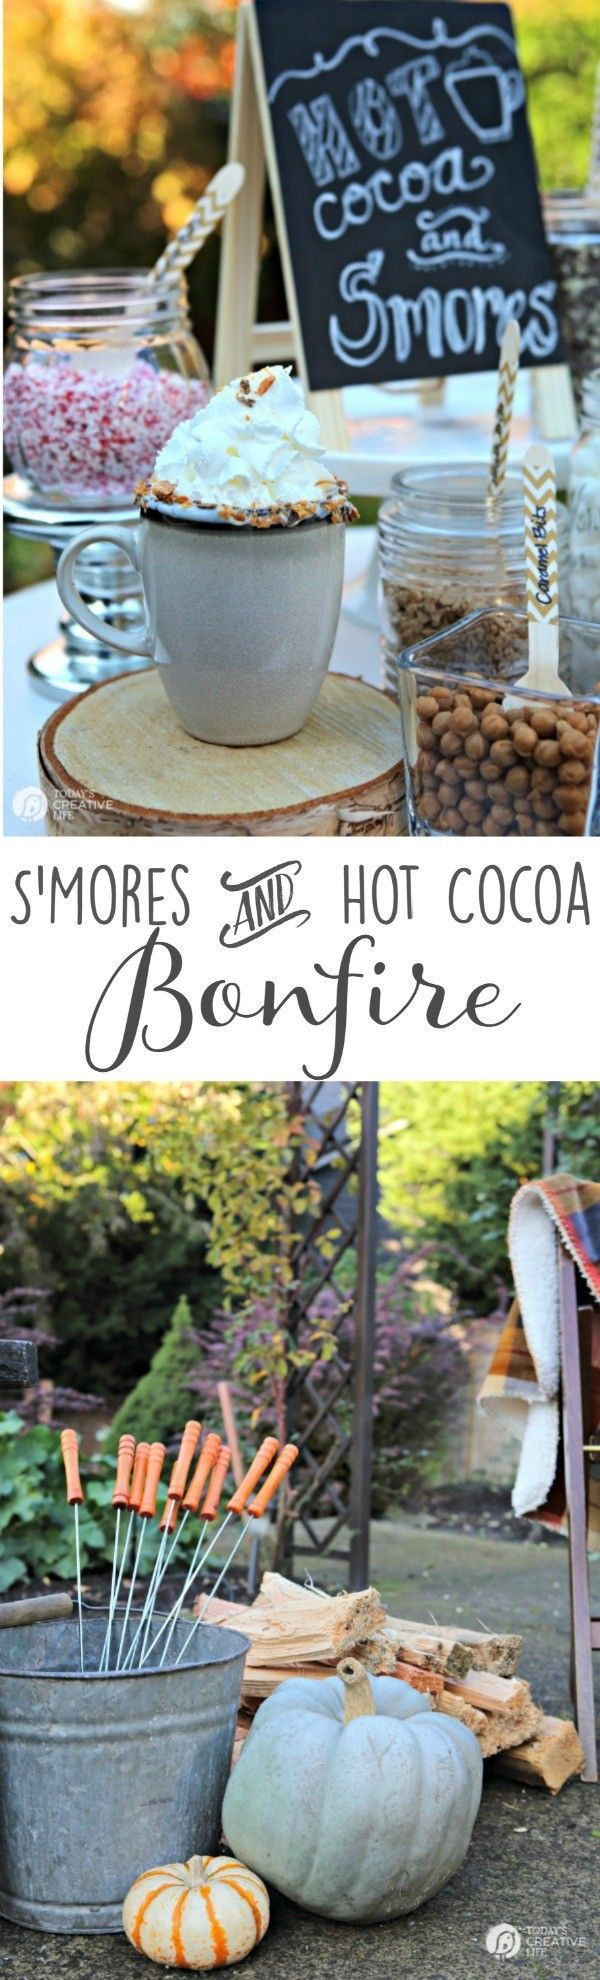 Summer Bonfire Party Ideas
 1000 ideas about Bonfire Parties on Pinterest